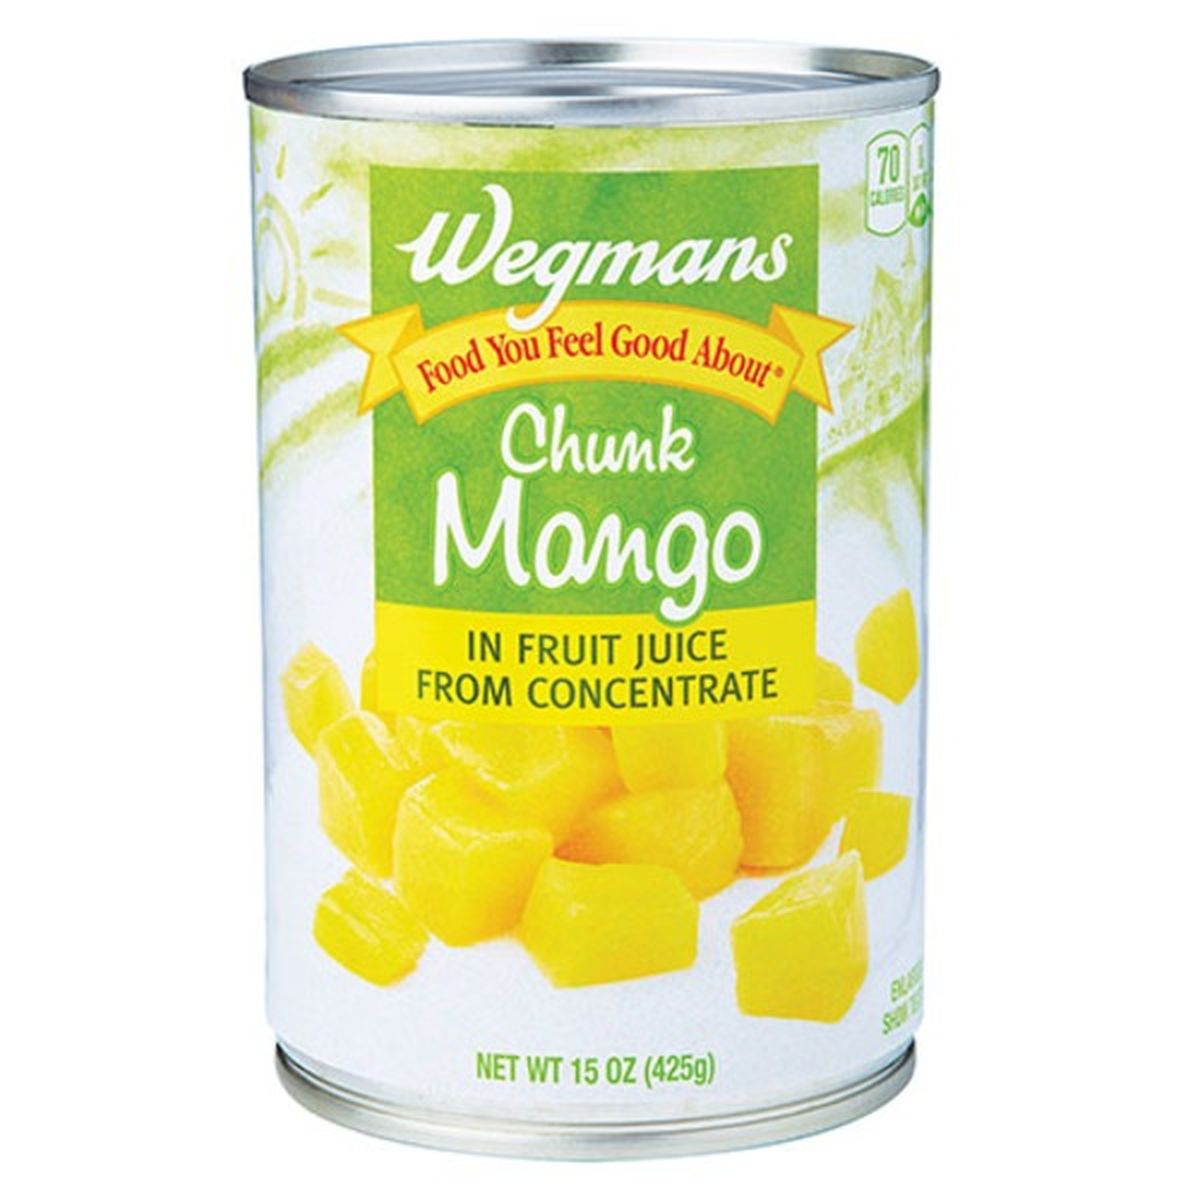 Calories in Wegmans Chunk Mango